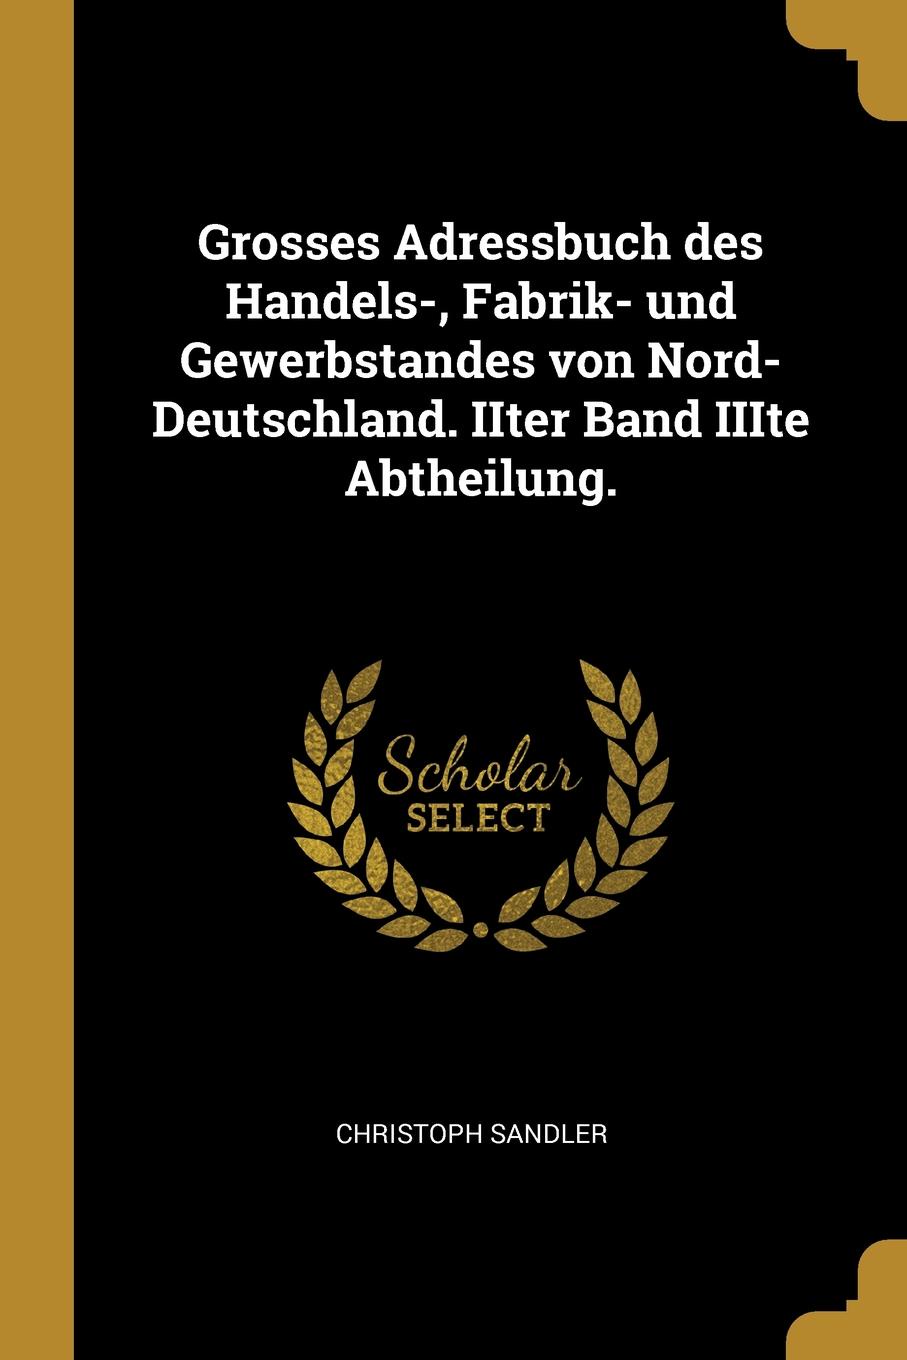 Grosses Adressbuch des Handels-, Fabrik- und Gewerbstandes von Nord-Deutschland. IIter Band IIIte Abtheilung.